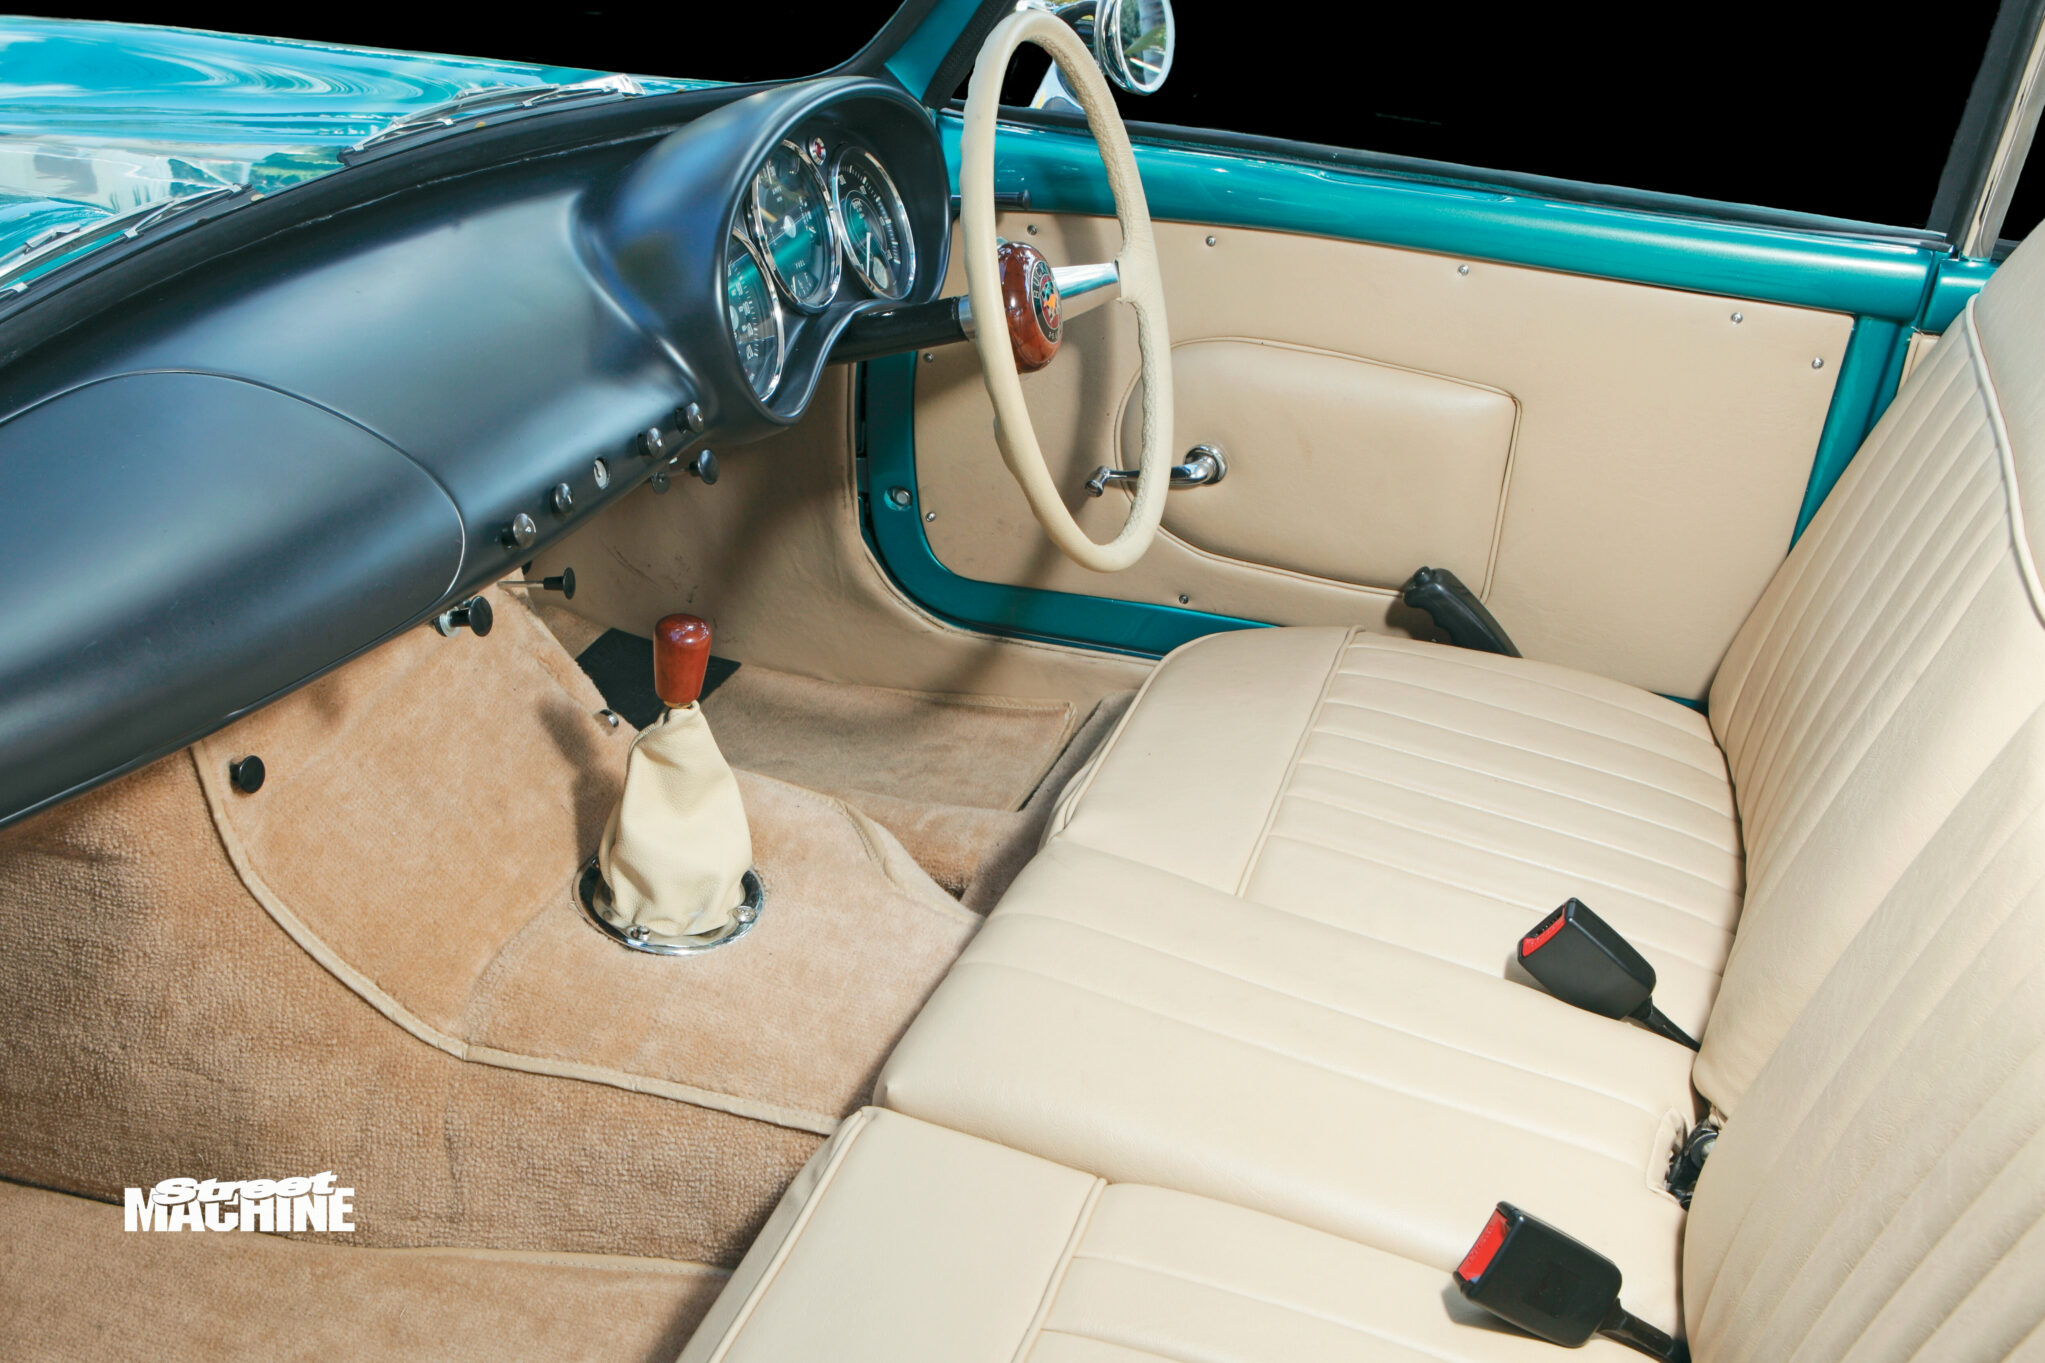 5fa513c8/buckle sports car interior wm jpg